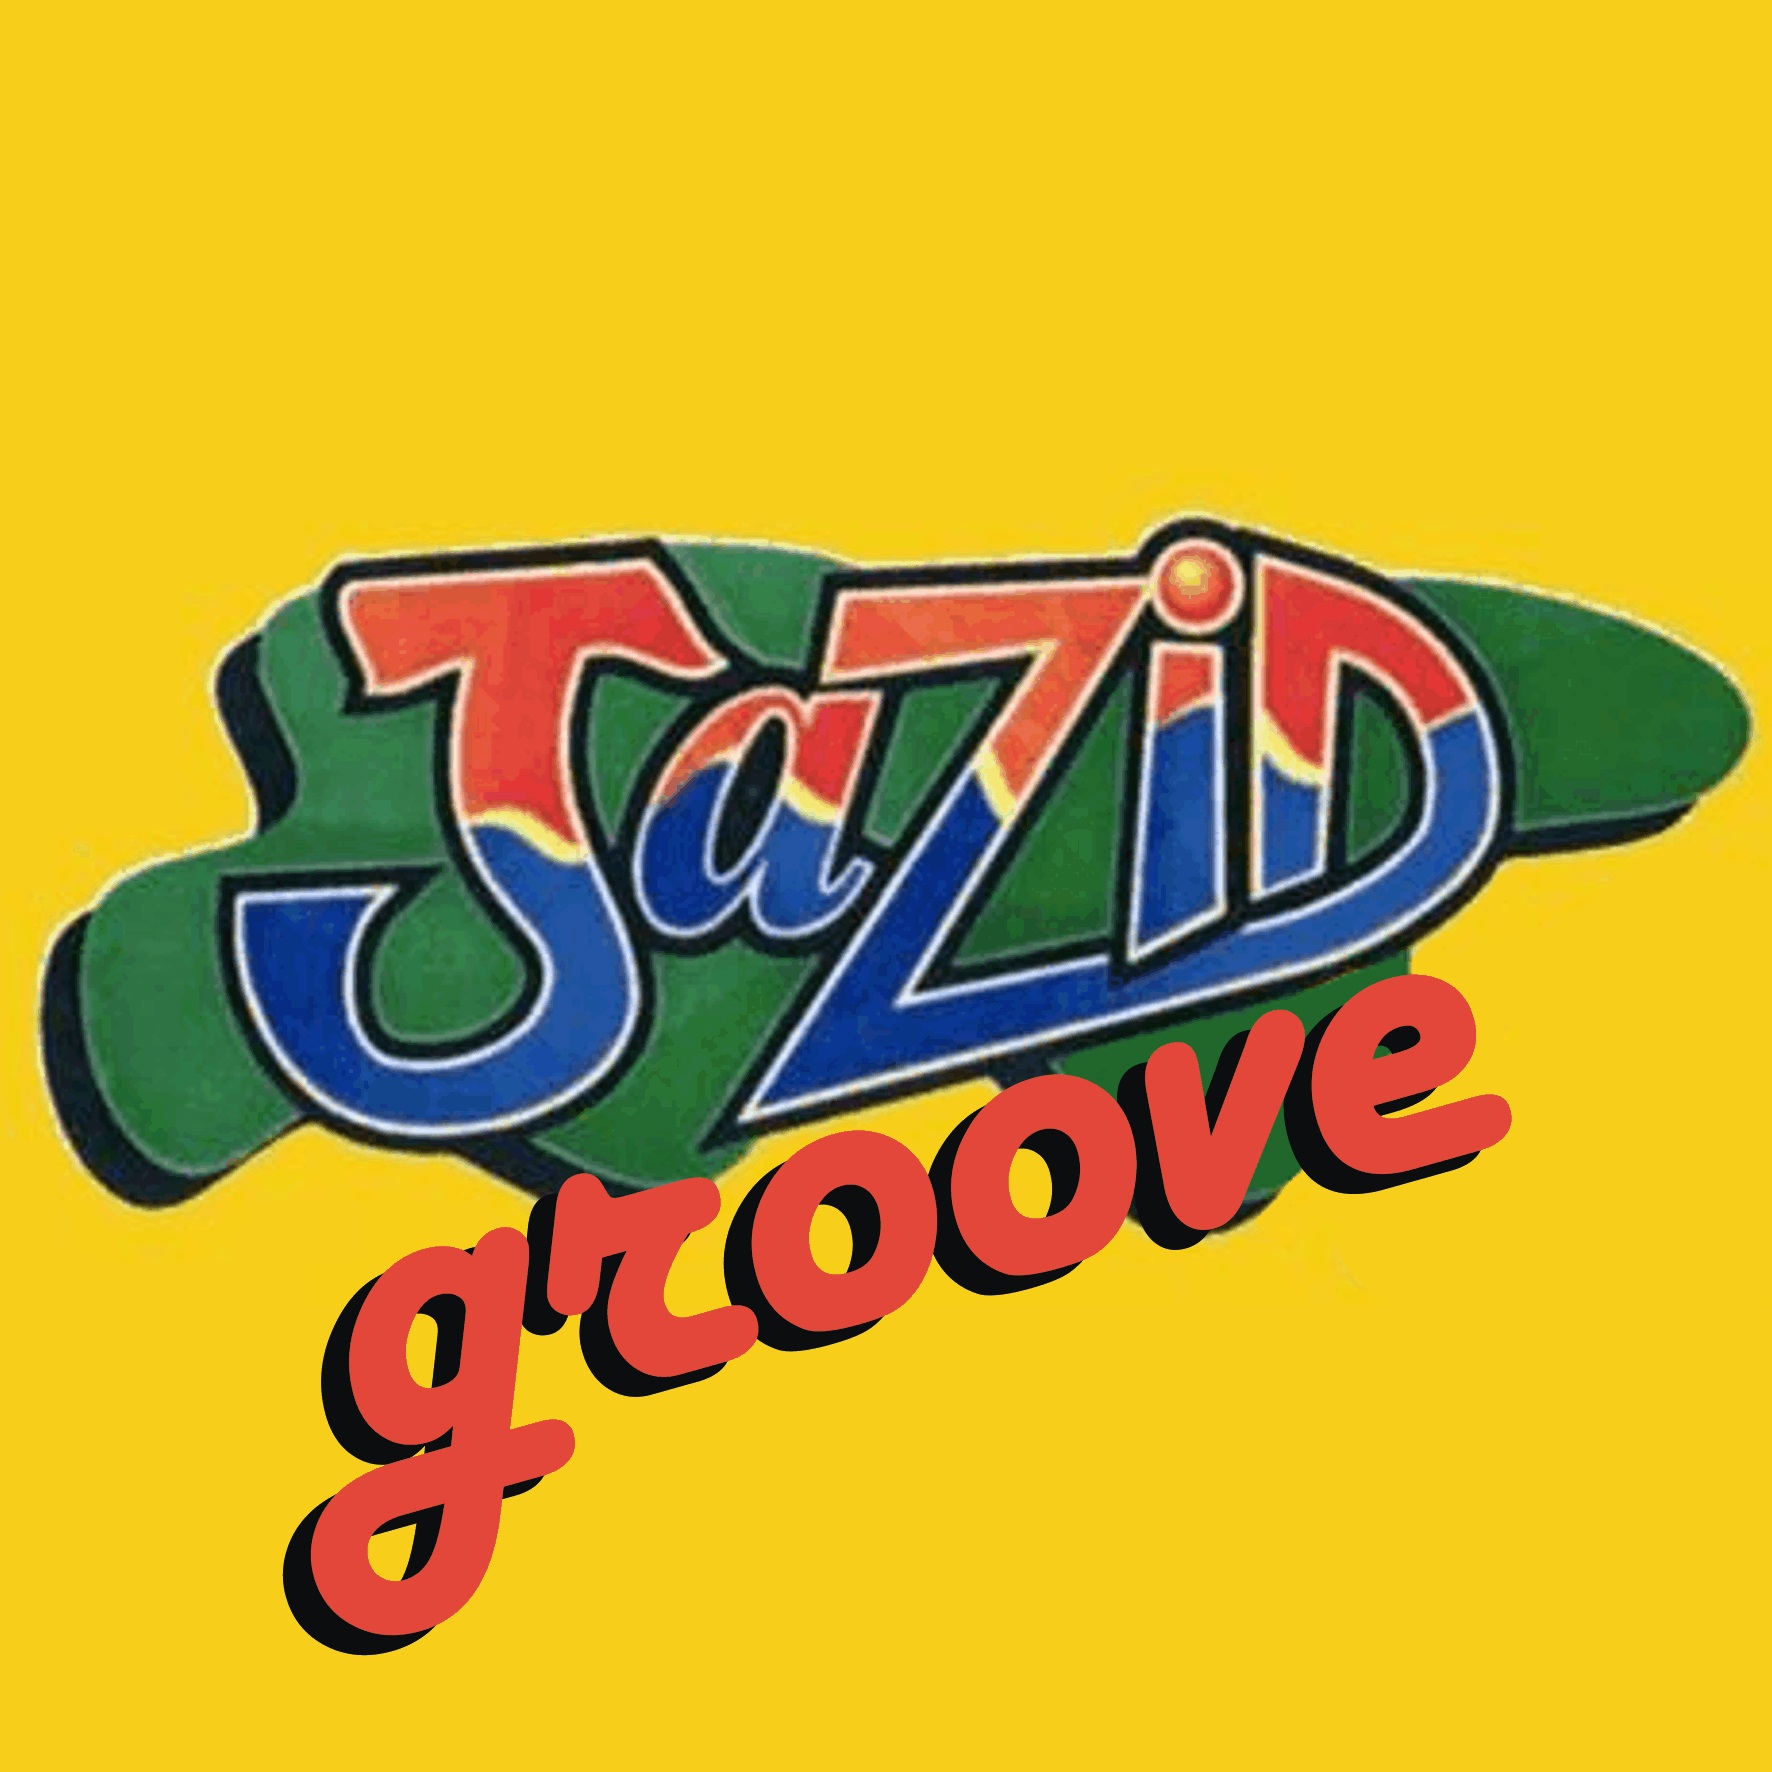 Jazid Groove 40